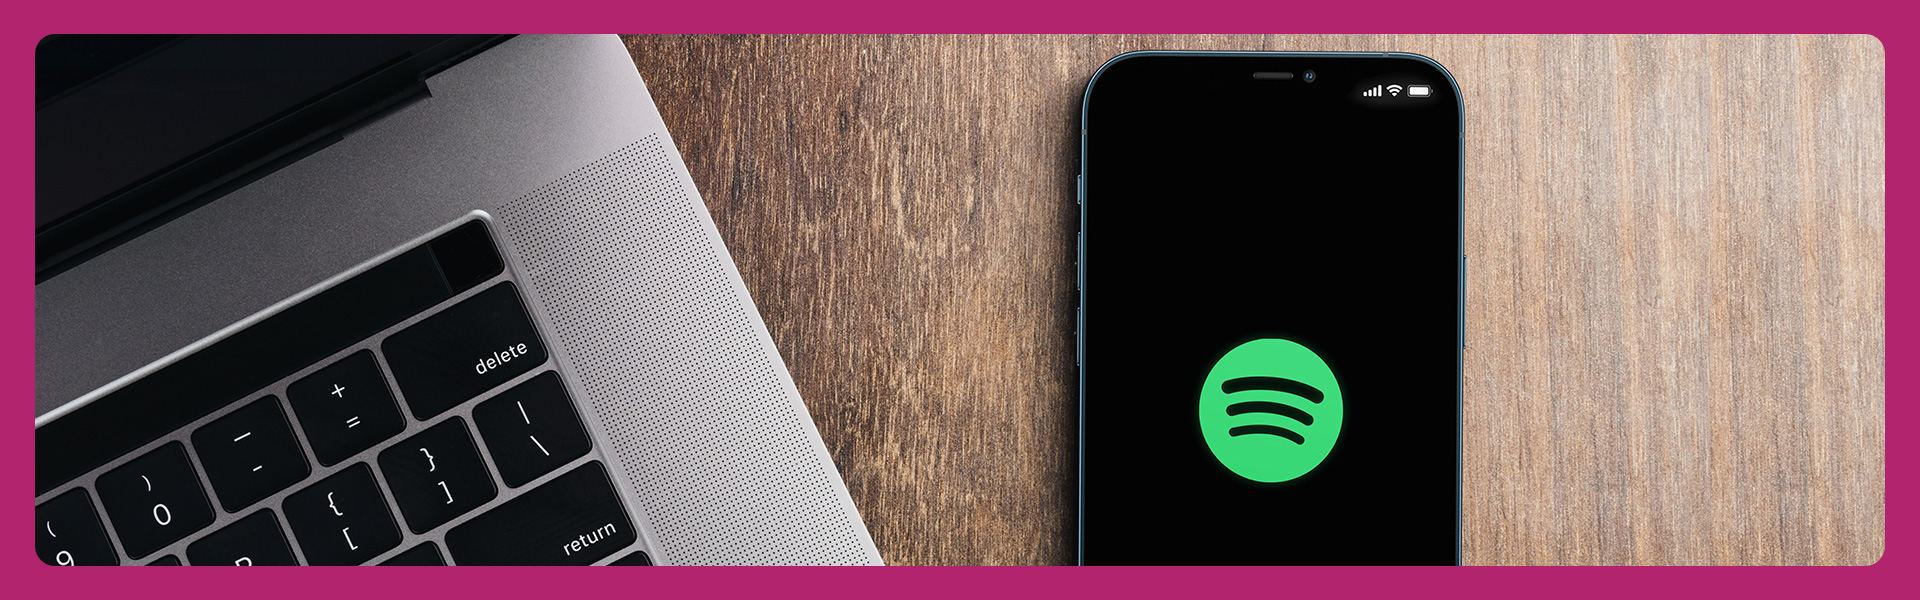 Cách hủy đăng ký Spotify Premium dễ dàng, nhanh gọn lẹ!